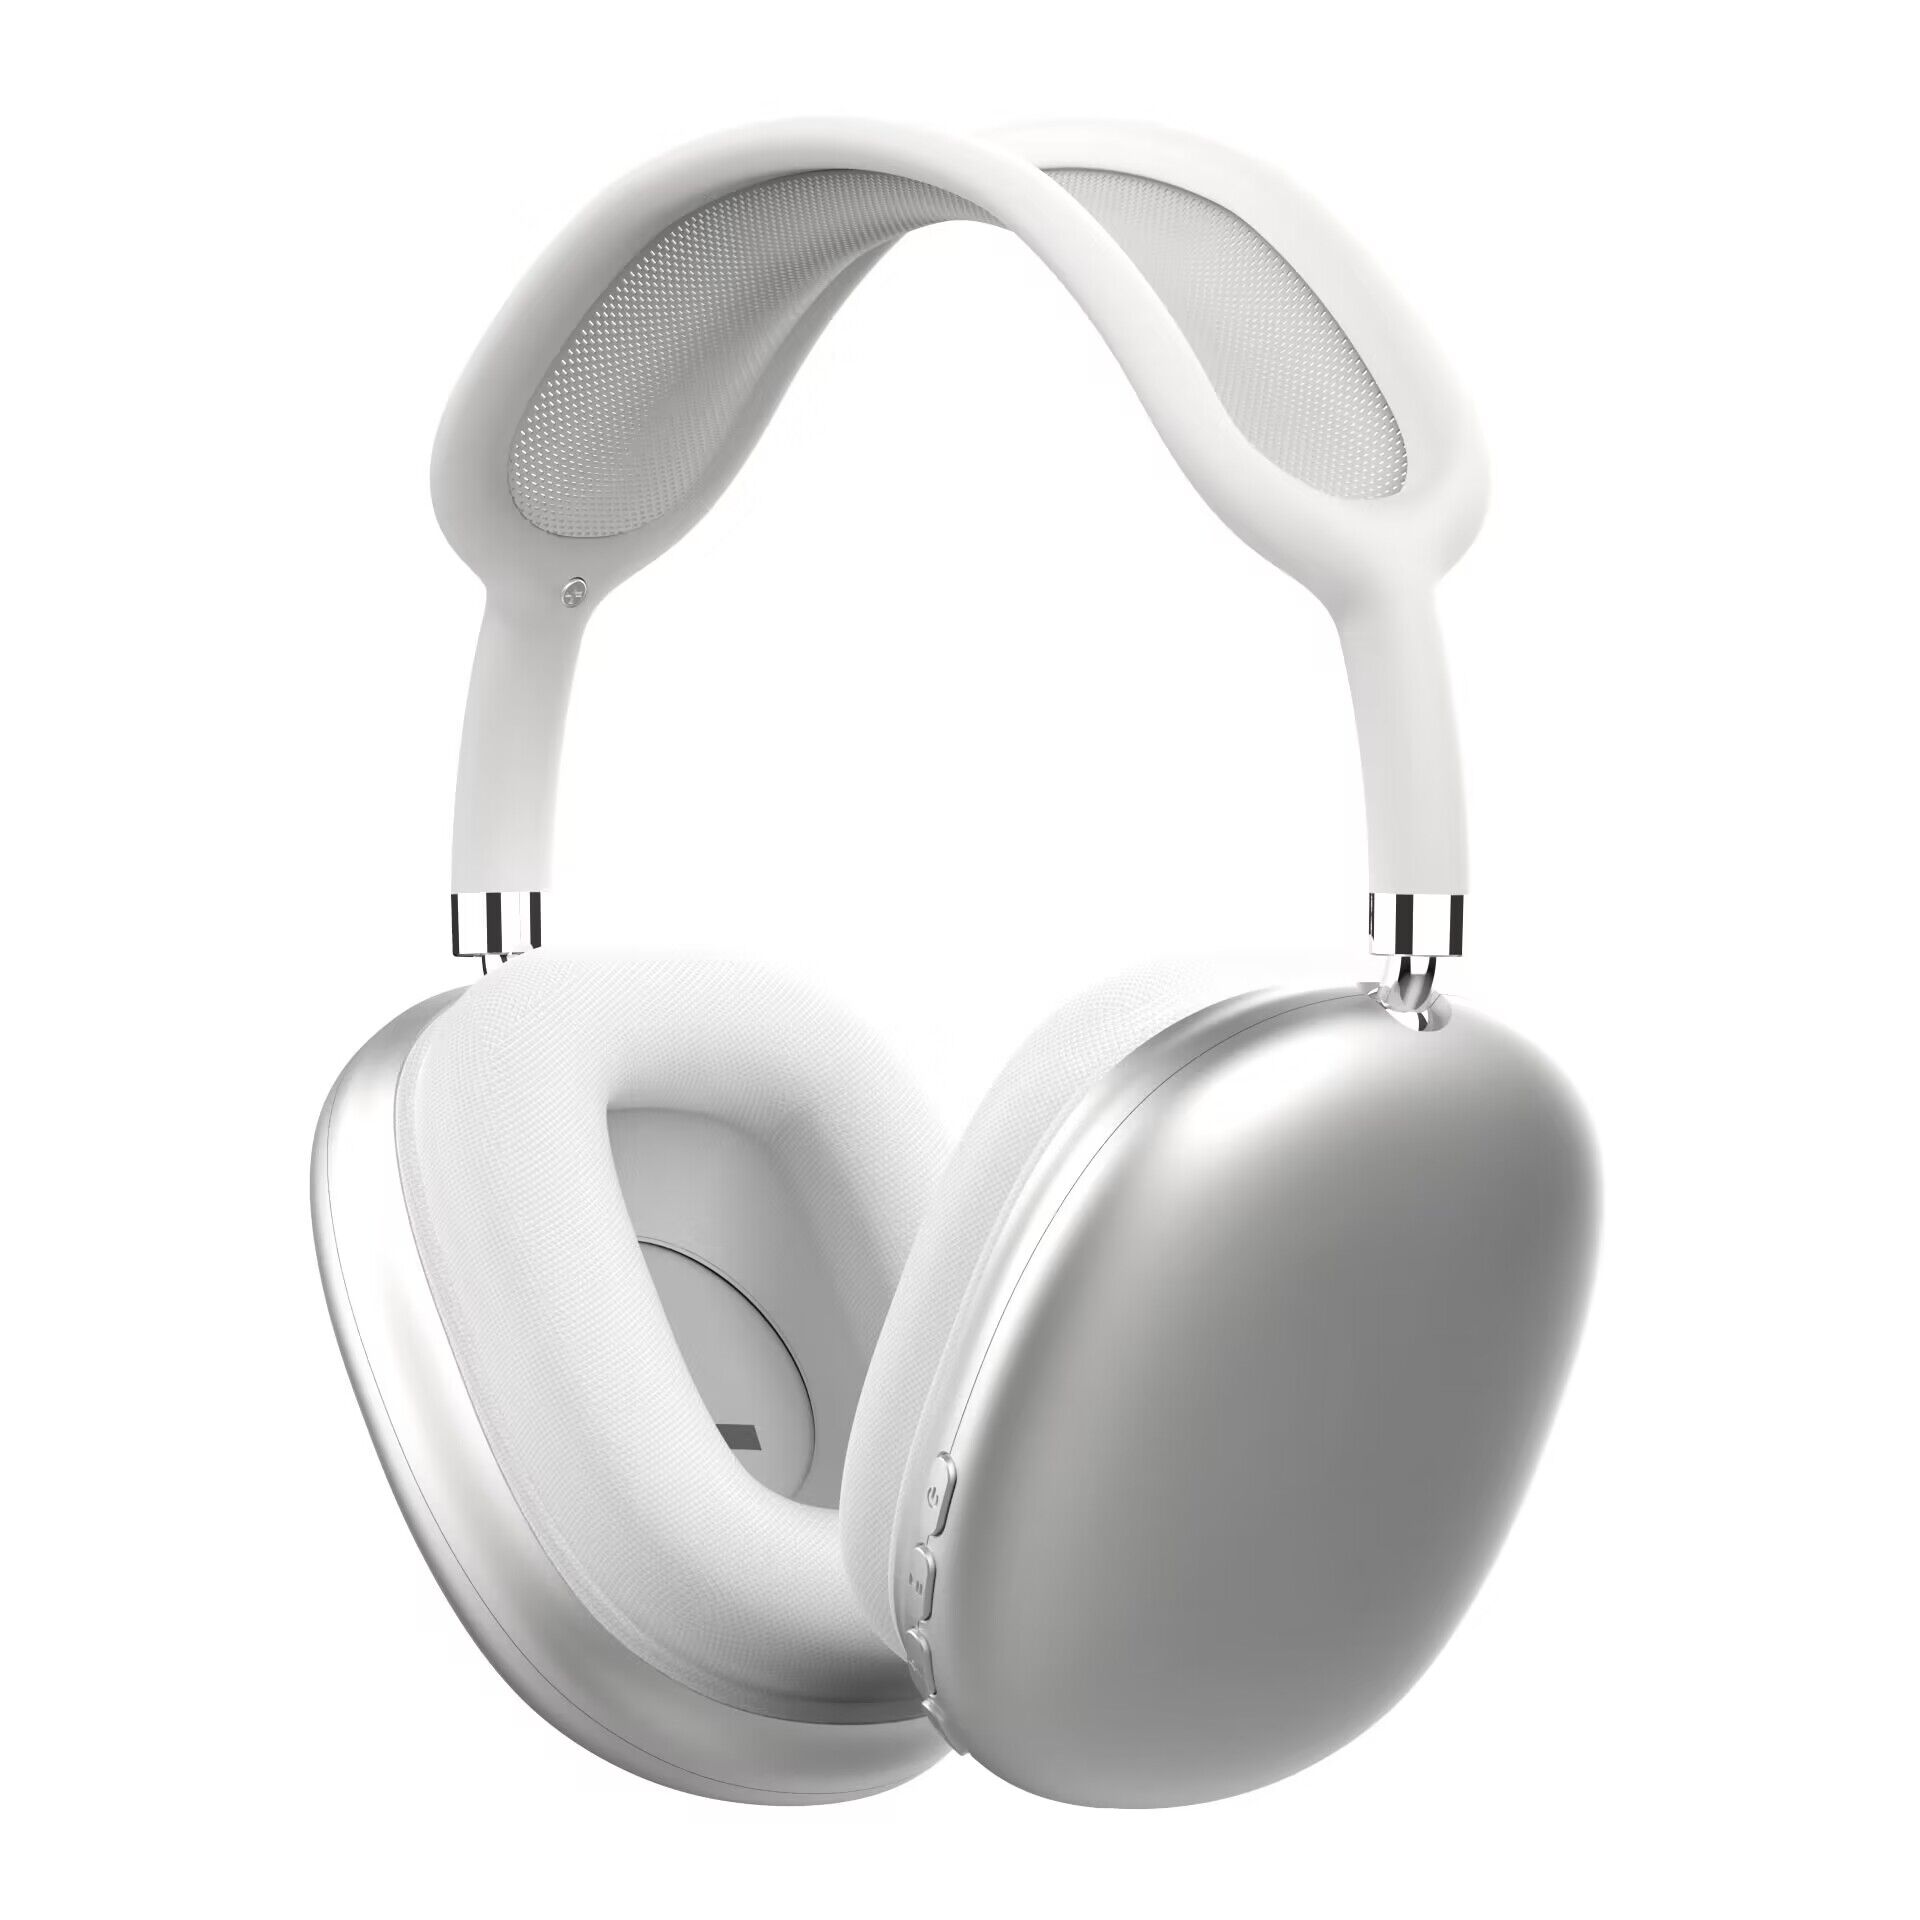 Fones de ouvido AIR Bluetooth sem fio, jogos esportivos, música, fones de ouvido universais 35